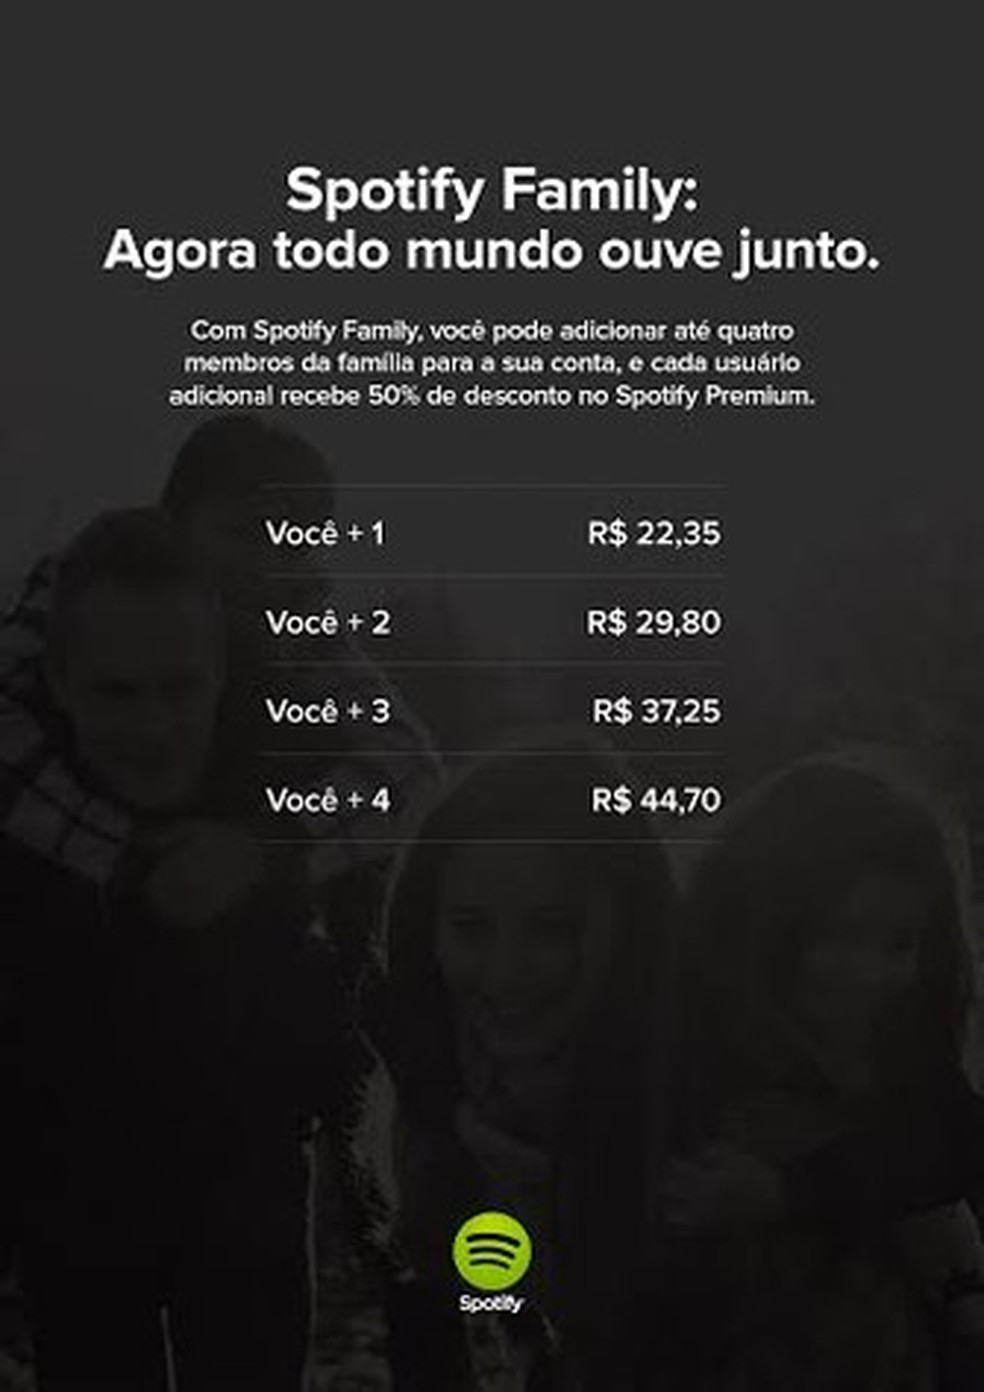 Spotify - Conhece o Plano Premium Familiar? Música sem anúncios para até 6  familiares, R$ 26,90/mês. 👪 🎶 www.spotify.com/family